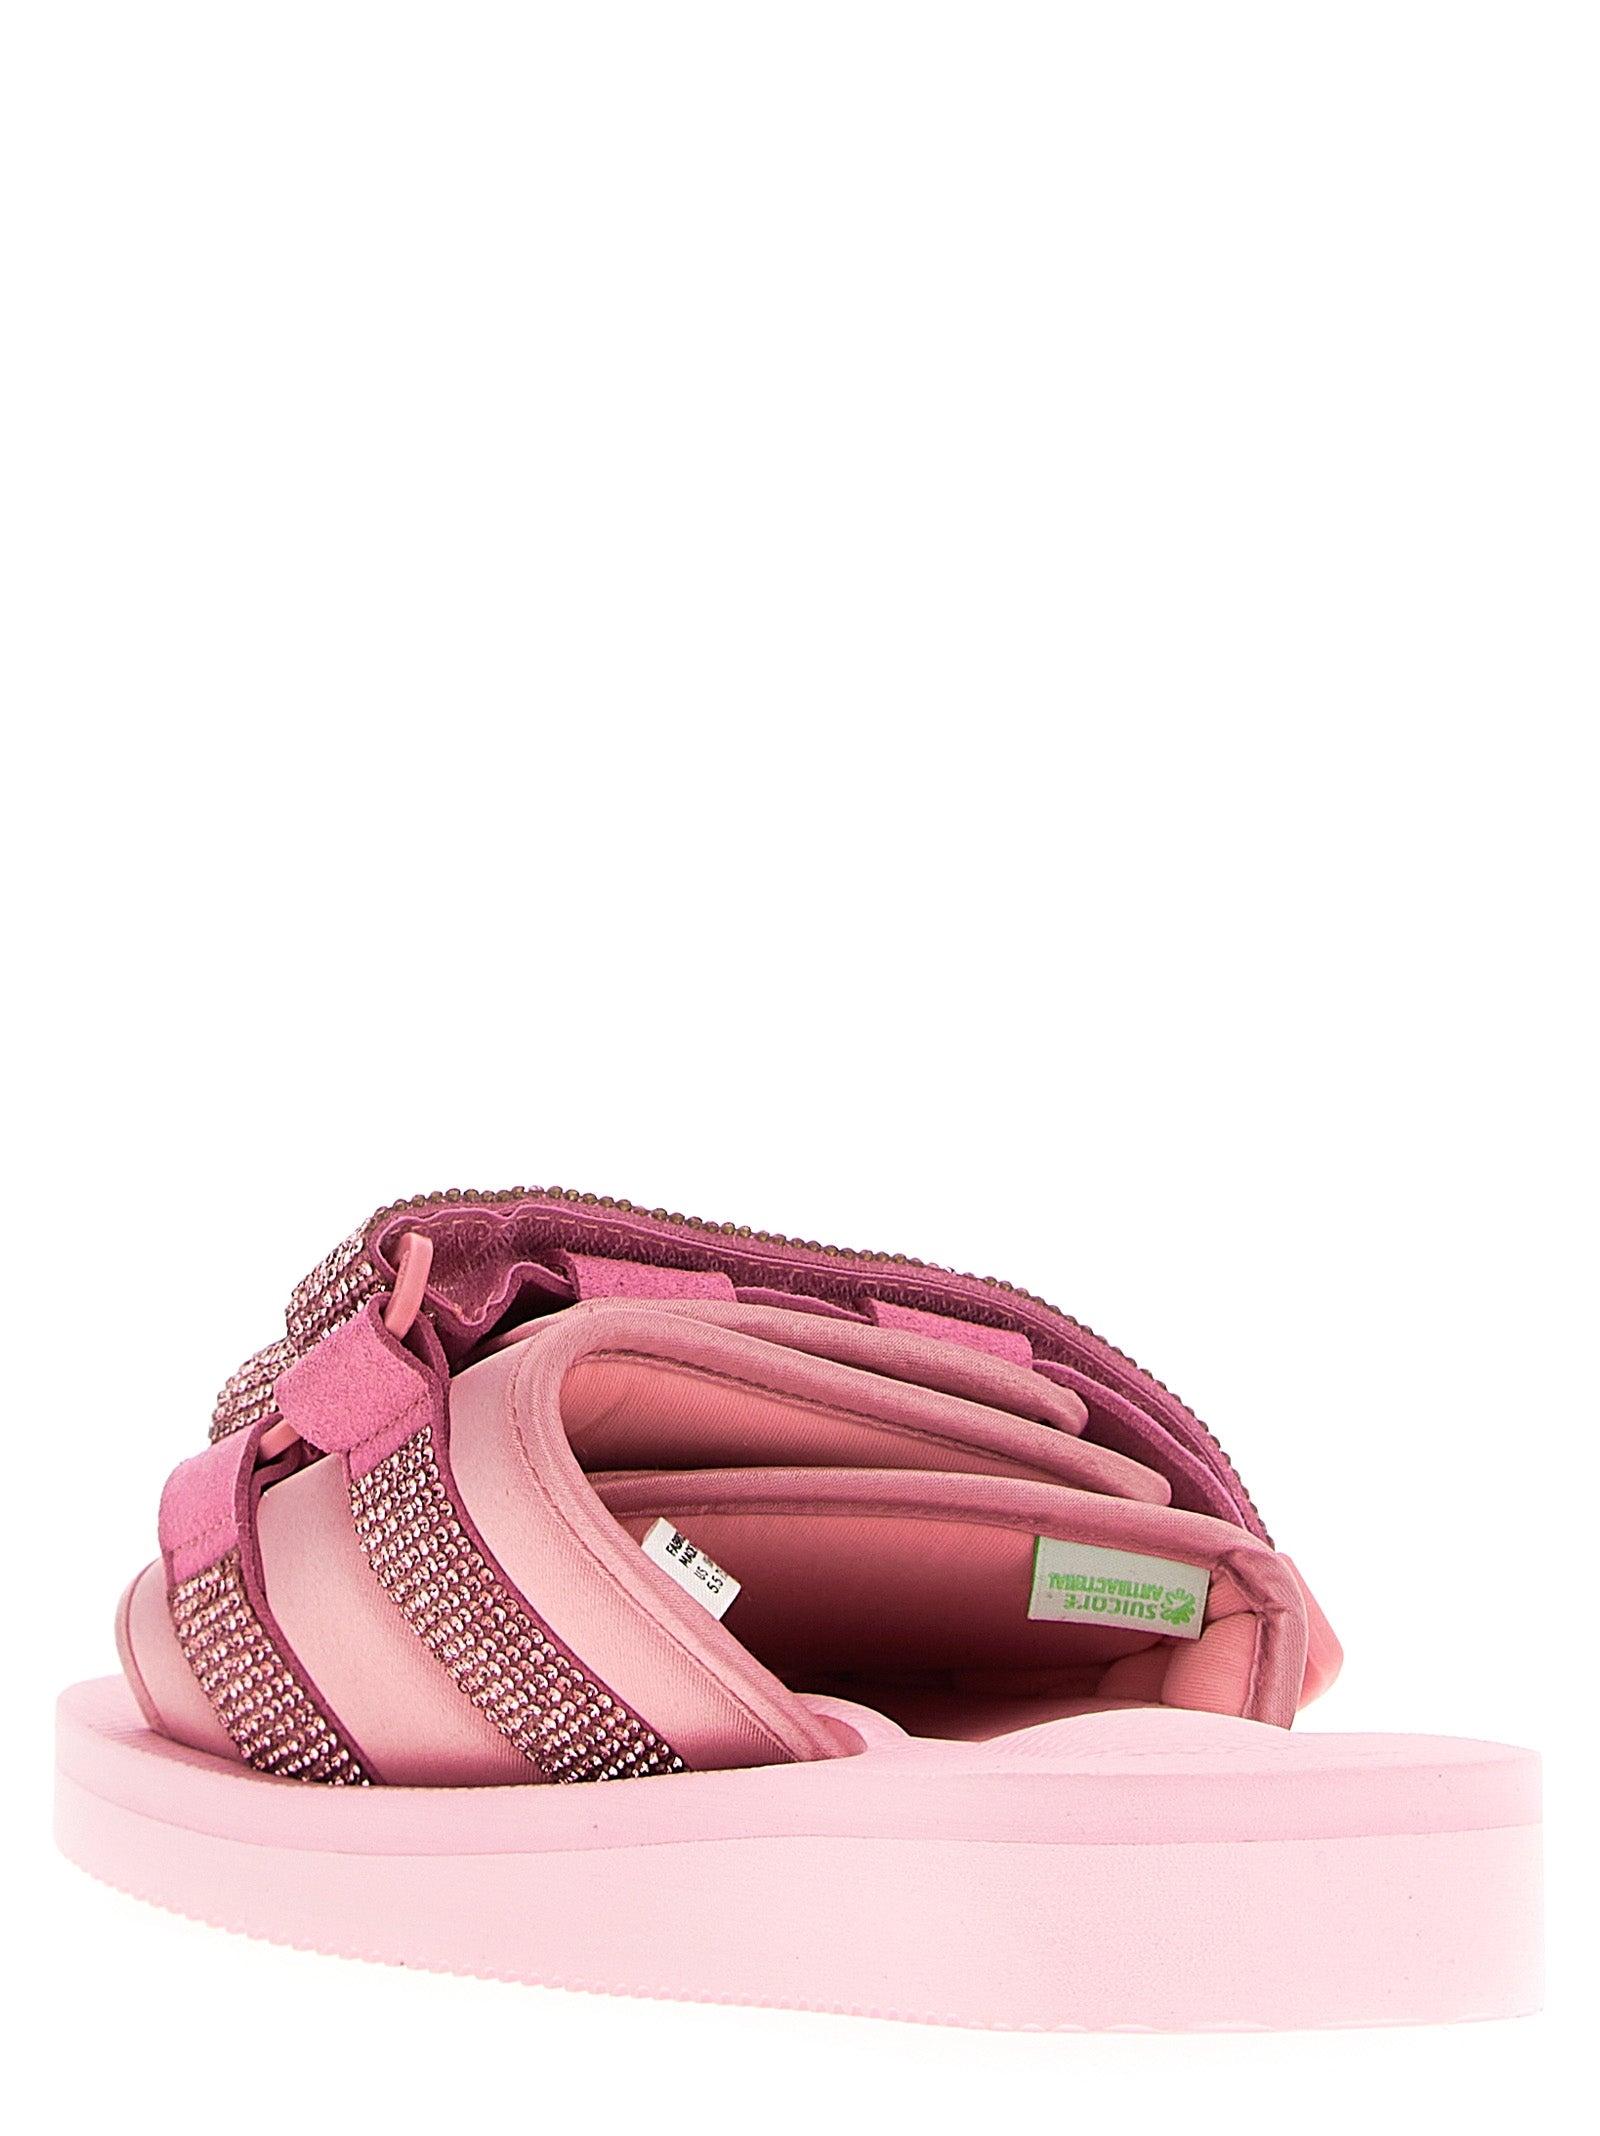 Blumarine Moto Sandals in Pink